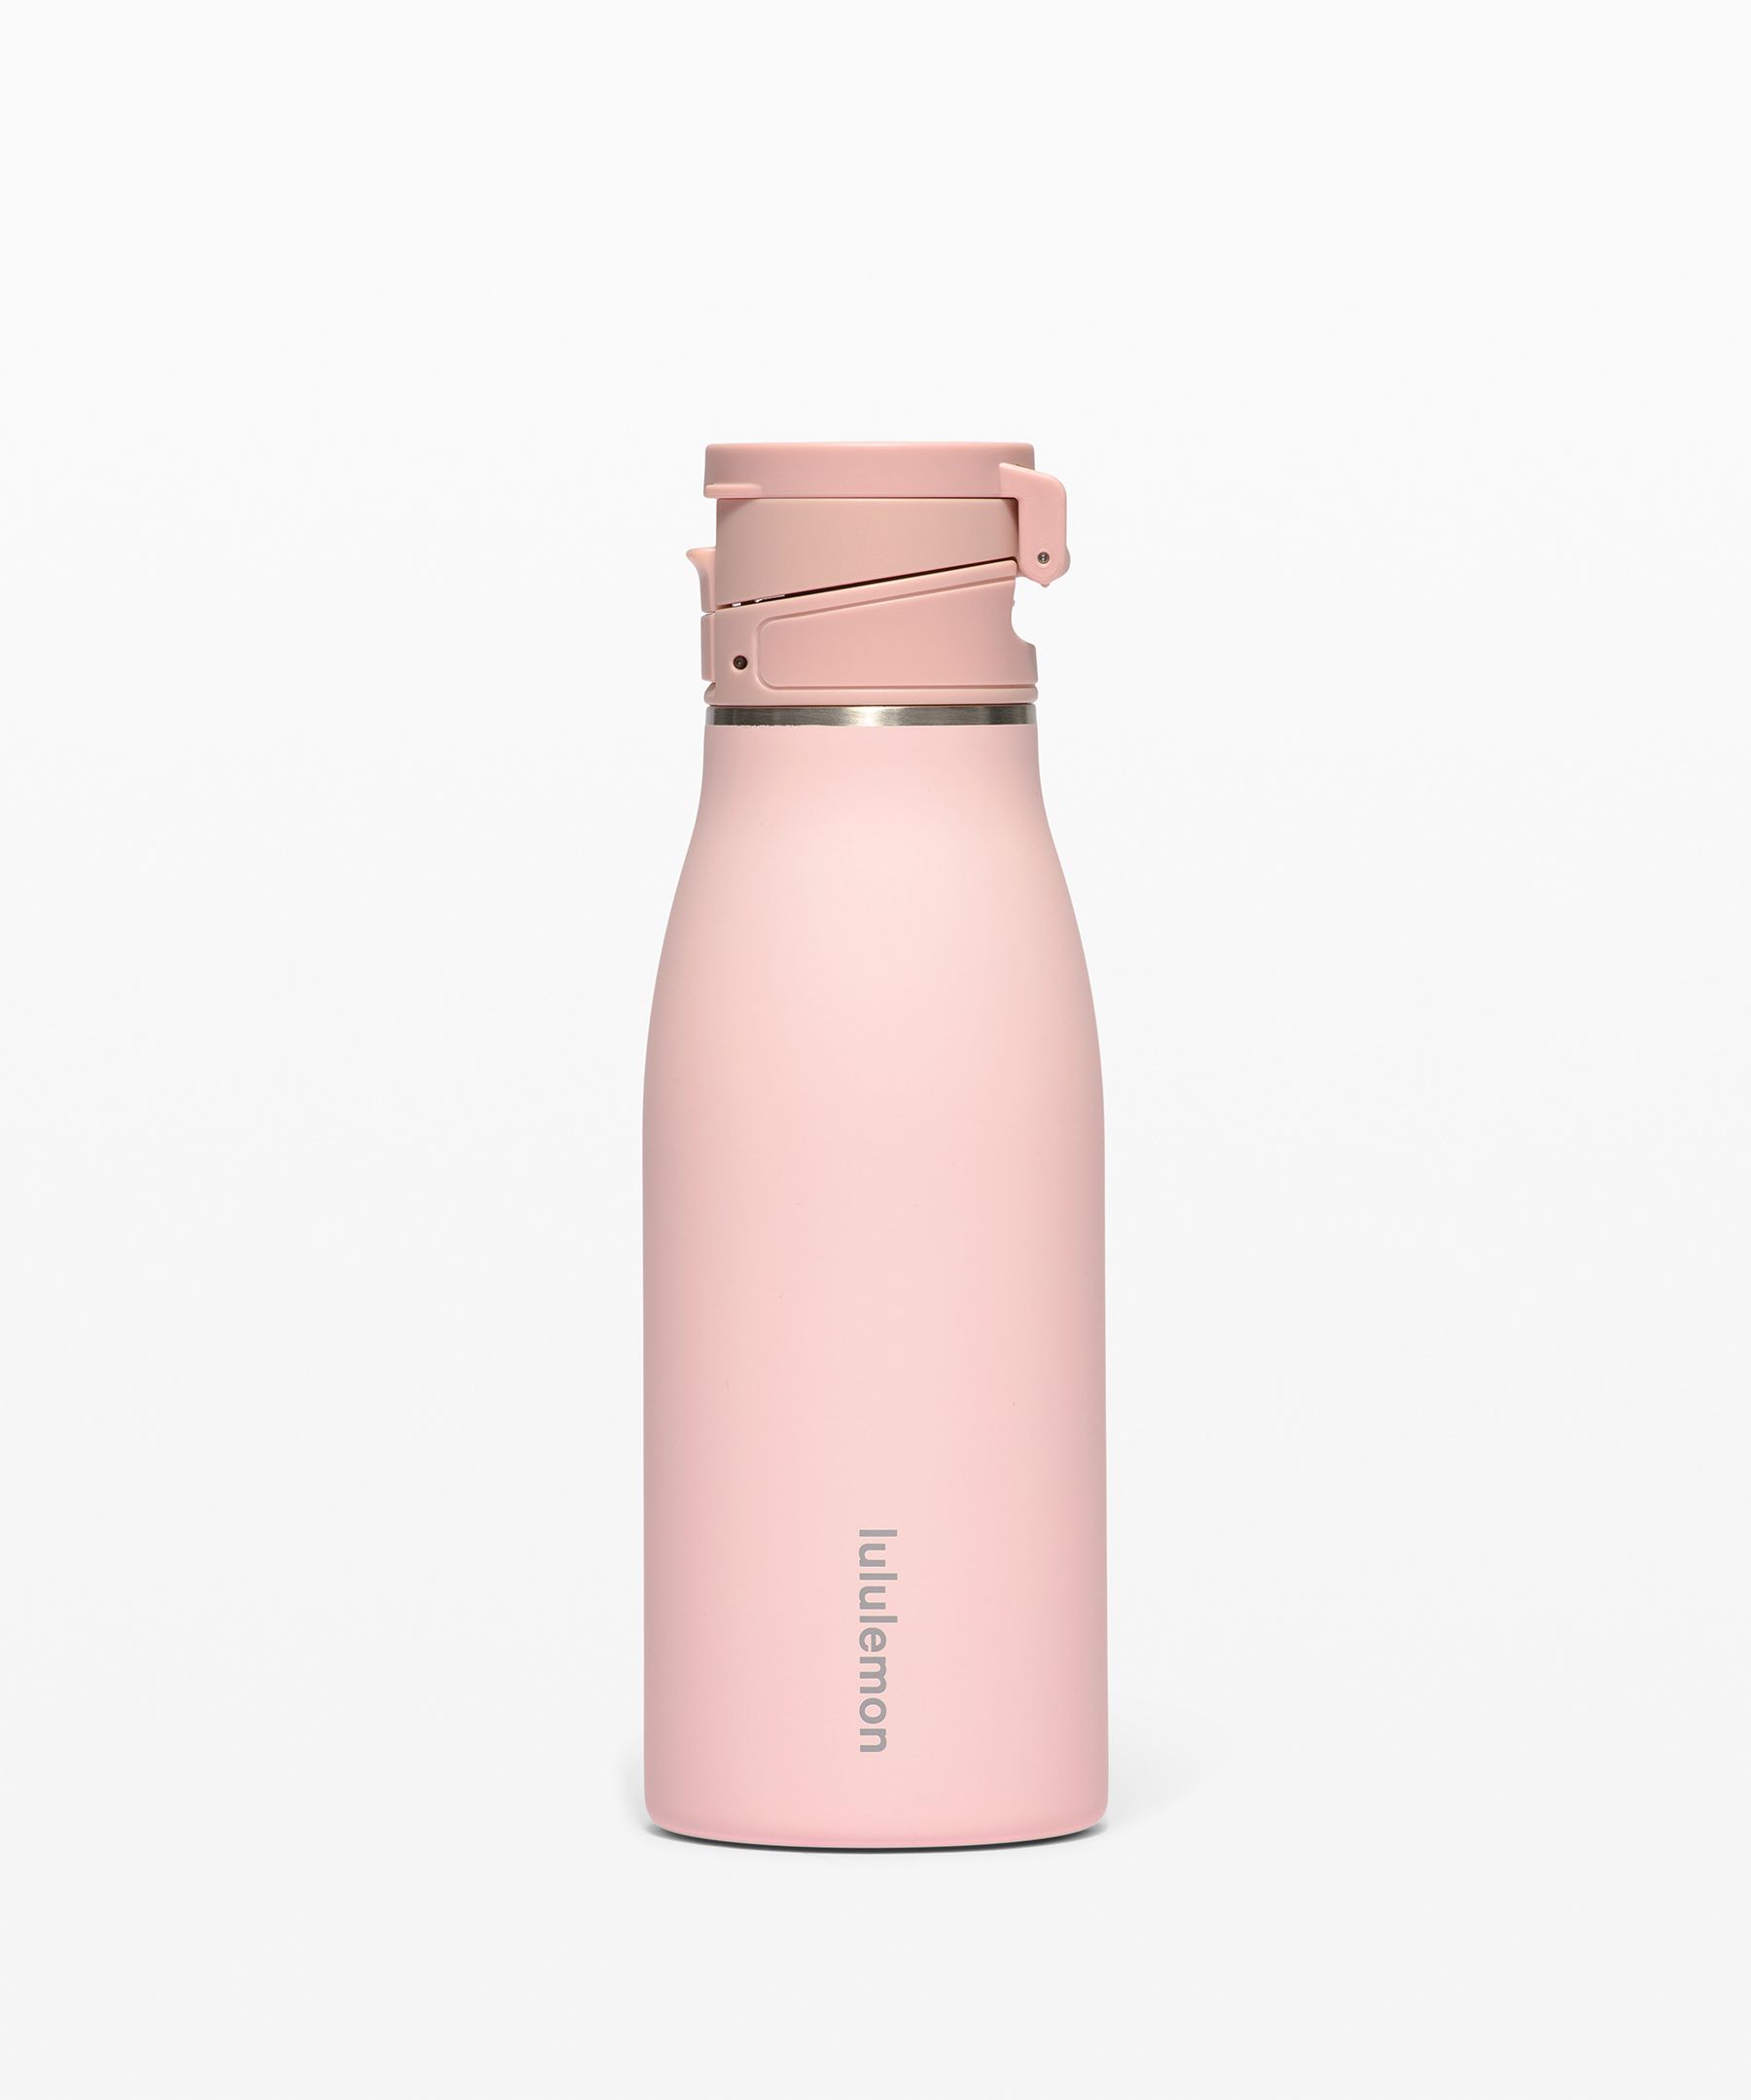 Lululemon The Hot/cold Bottle 17oz In Pink Mist